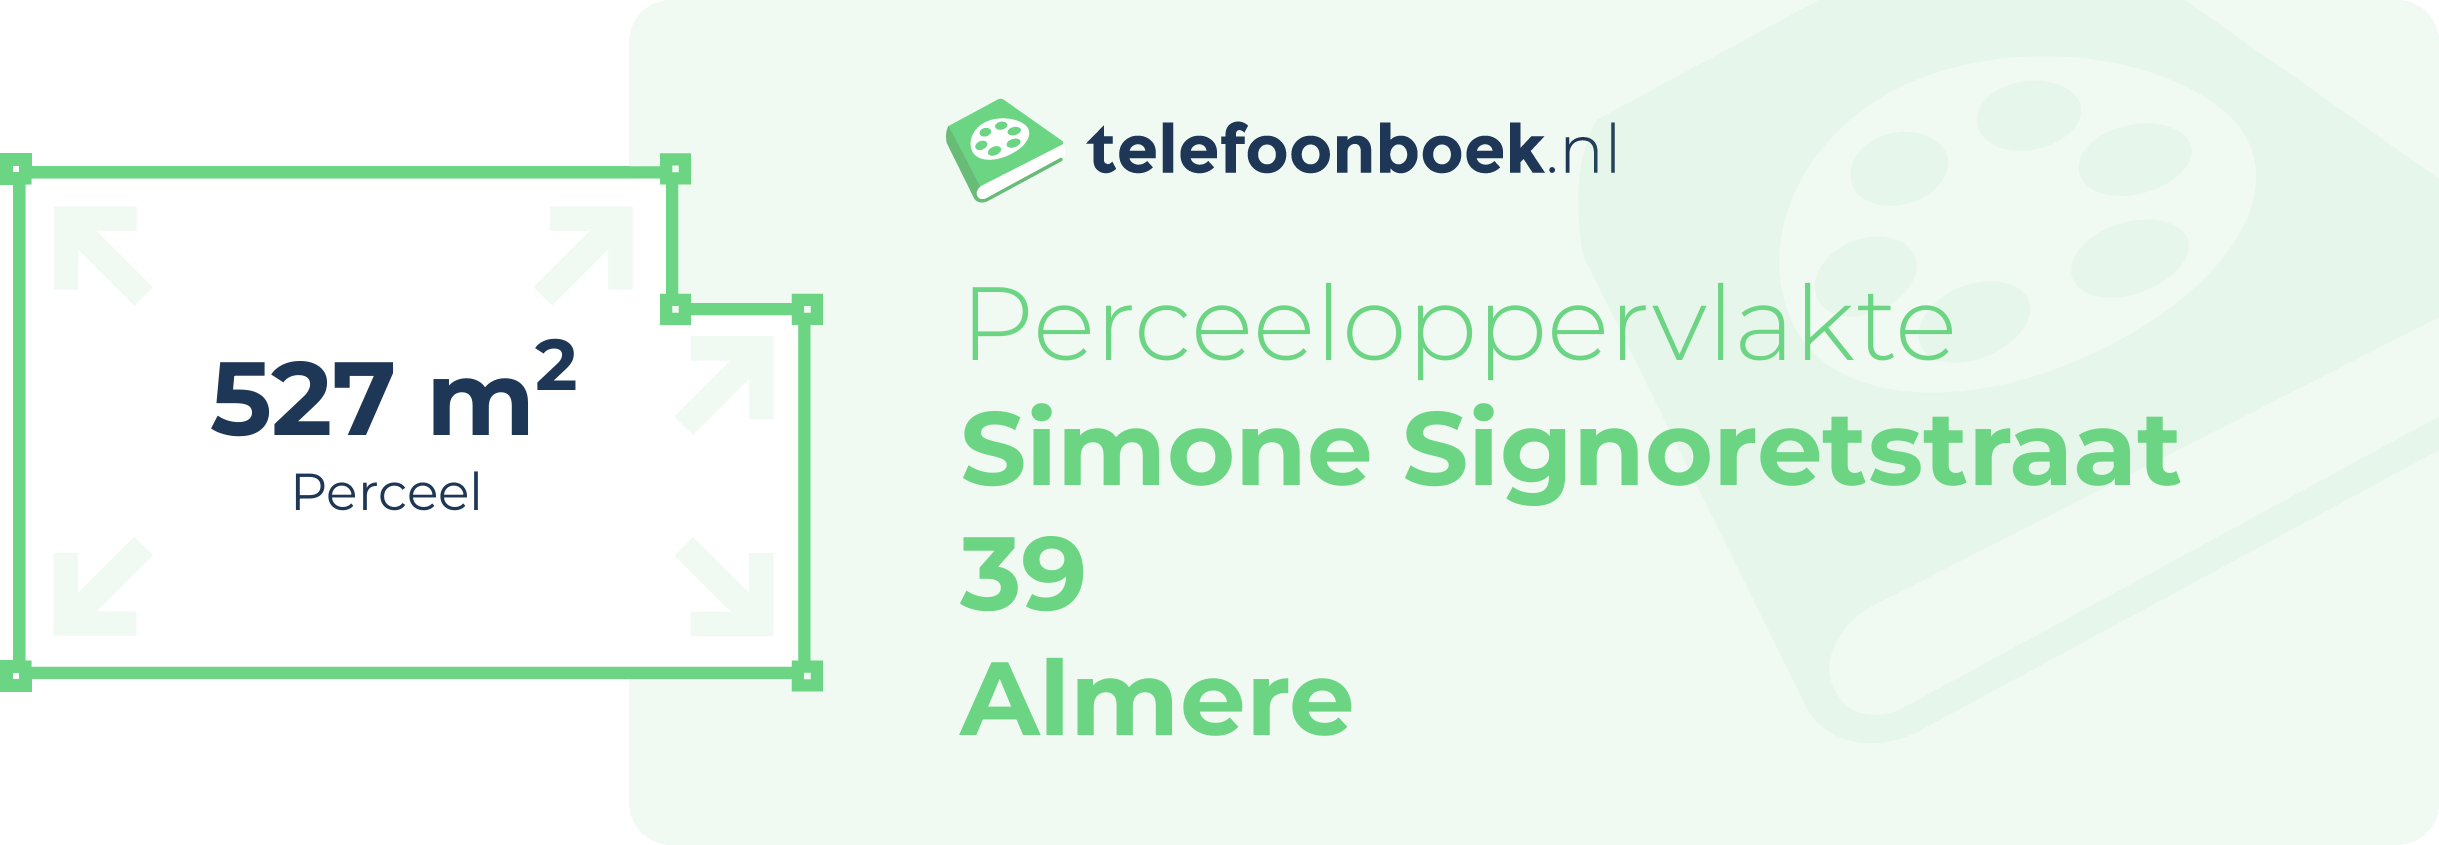 Perceeloppervlakte Simone Signoretstraat 39 Almere